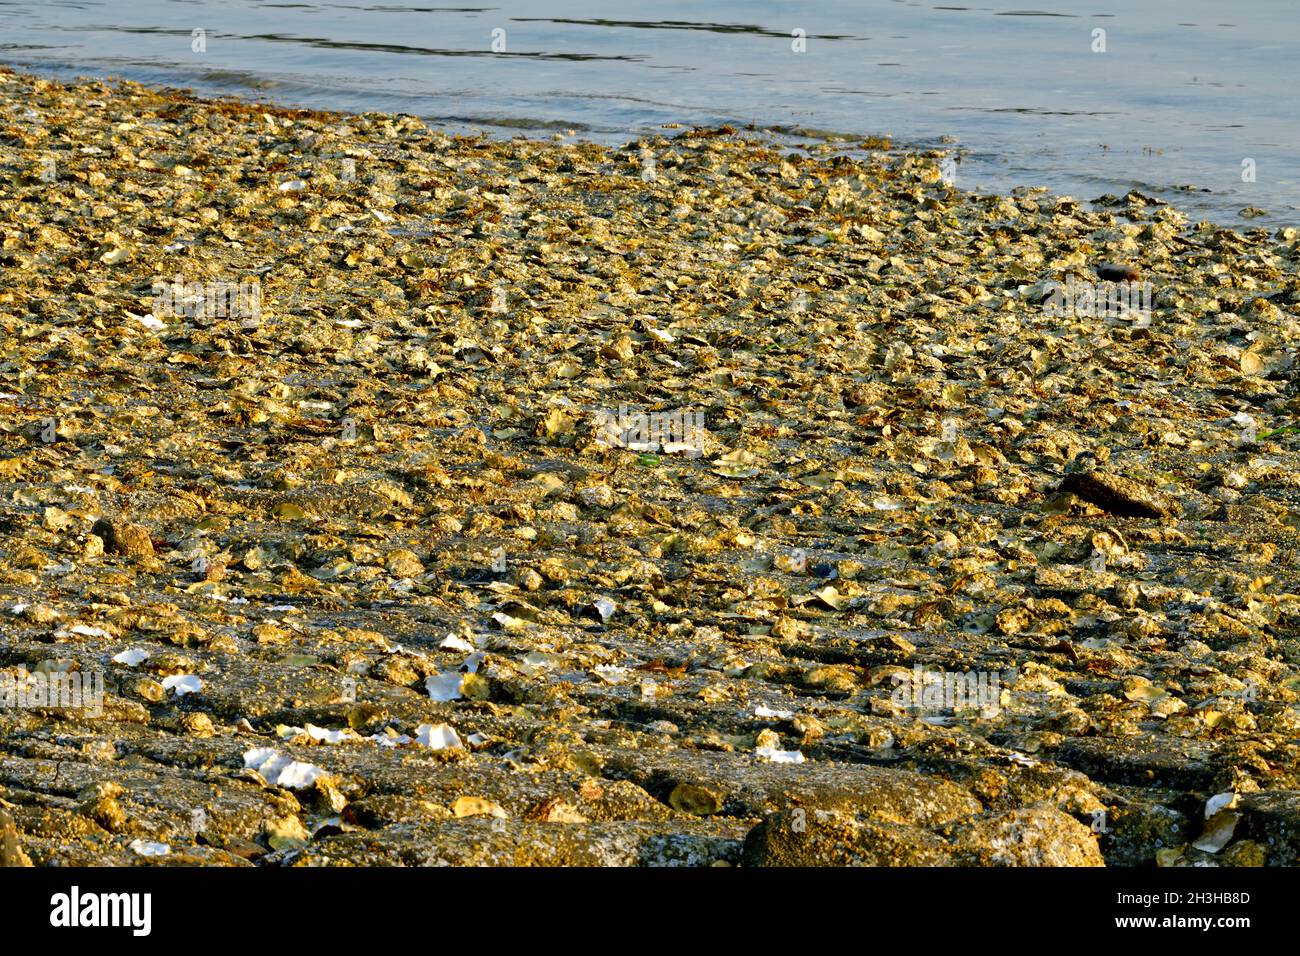 Ein Bett der wilde Austern zu einem felsigen Ufer auf Vancouver Island British Columbia Kanada festhalten Stockfoto